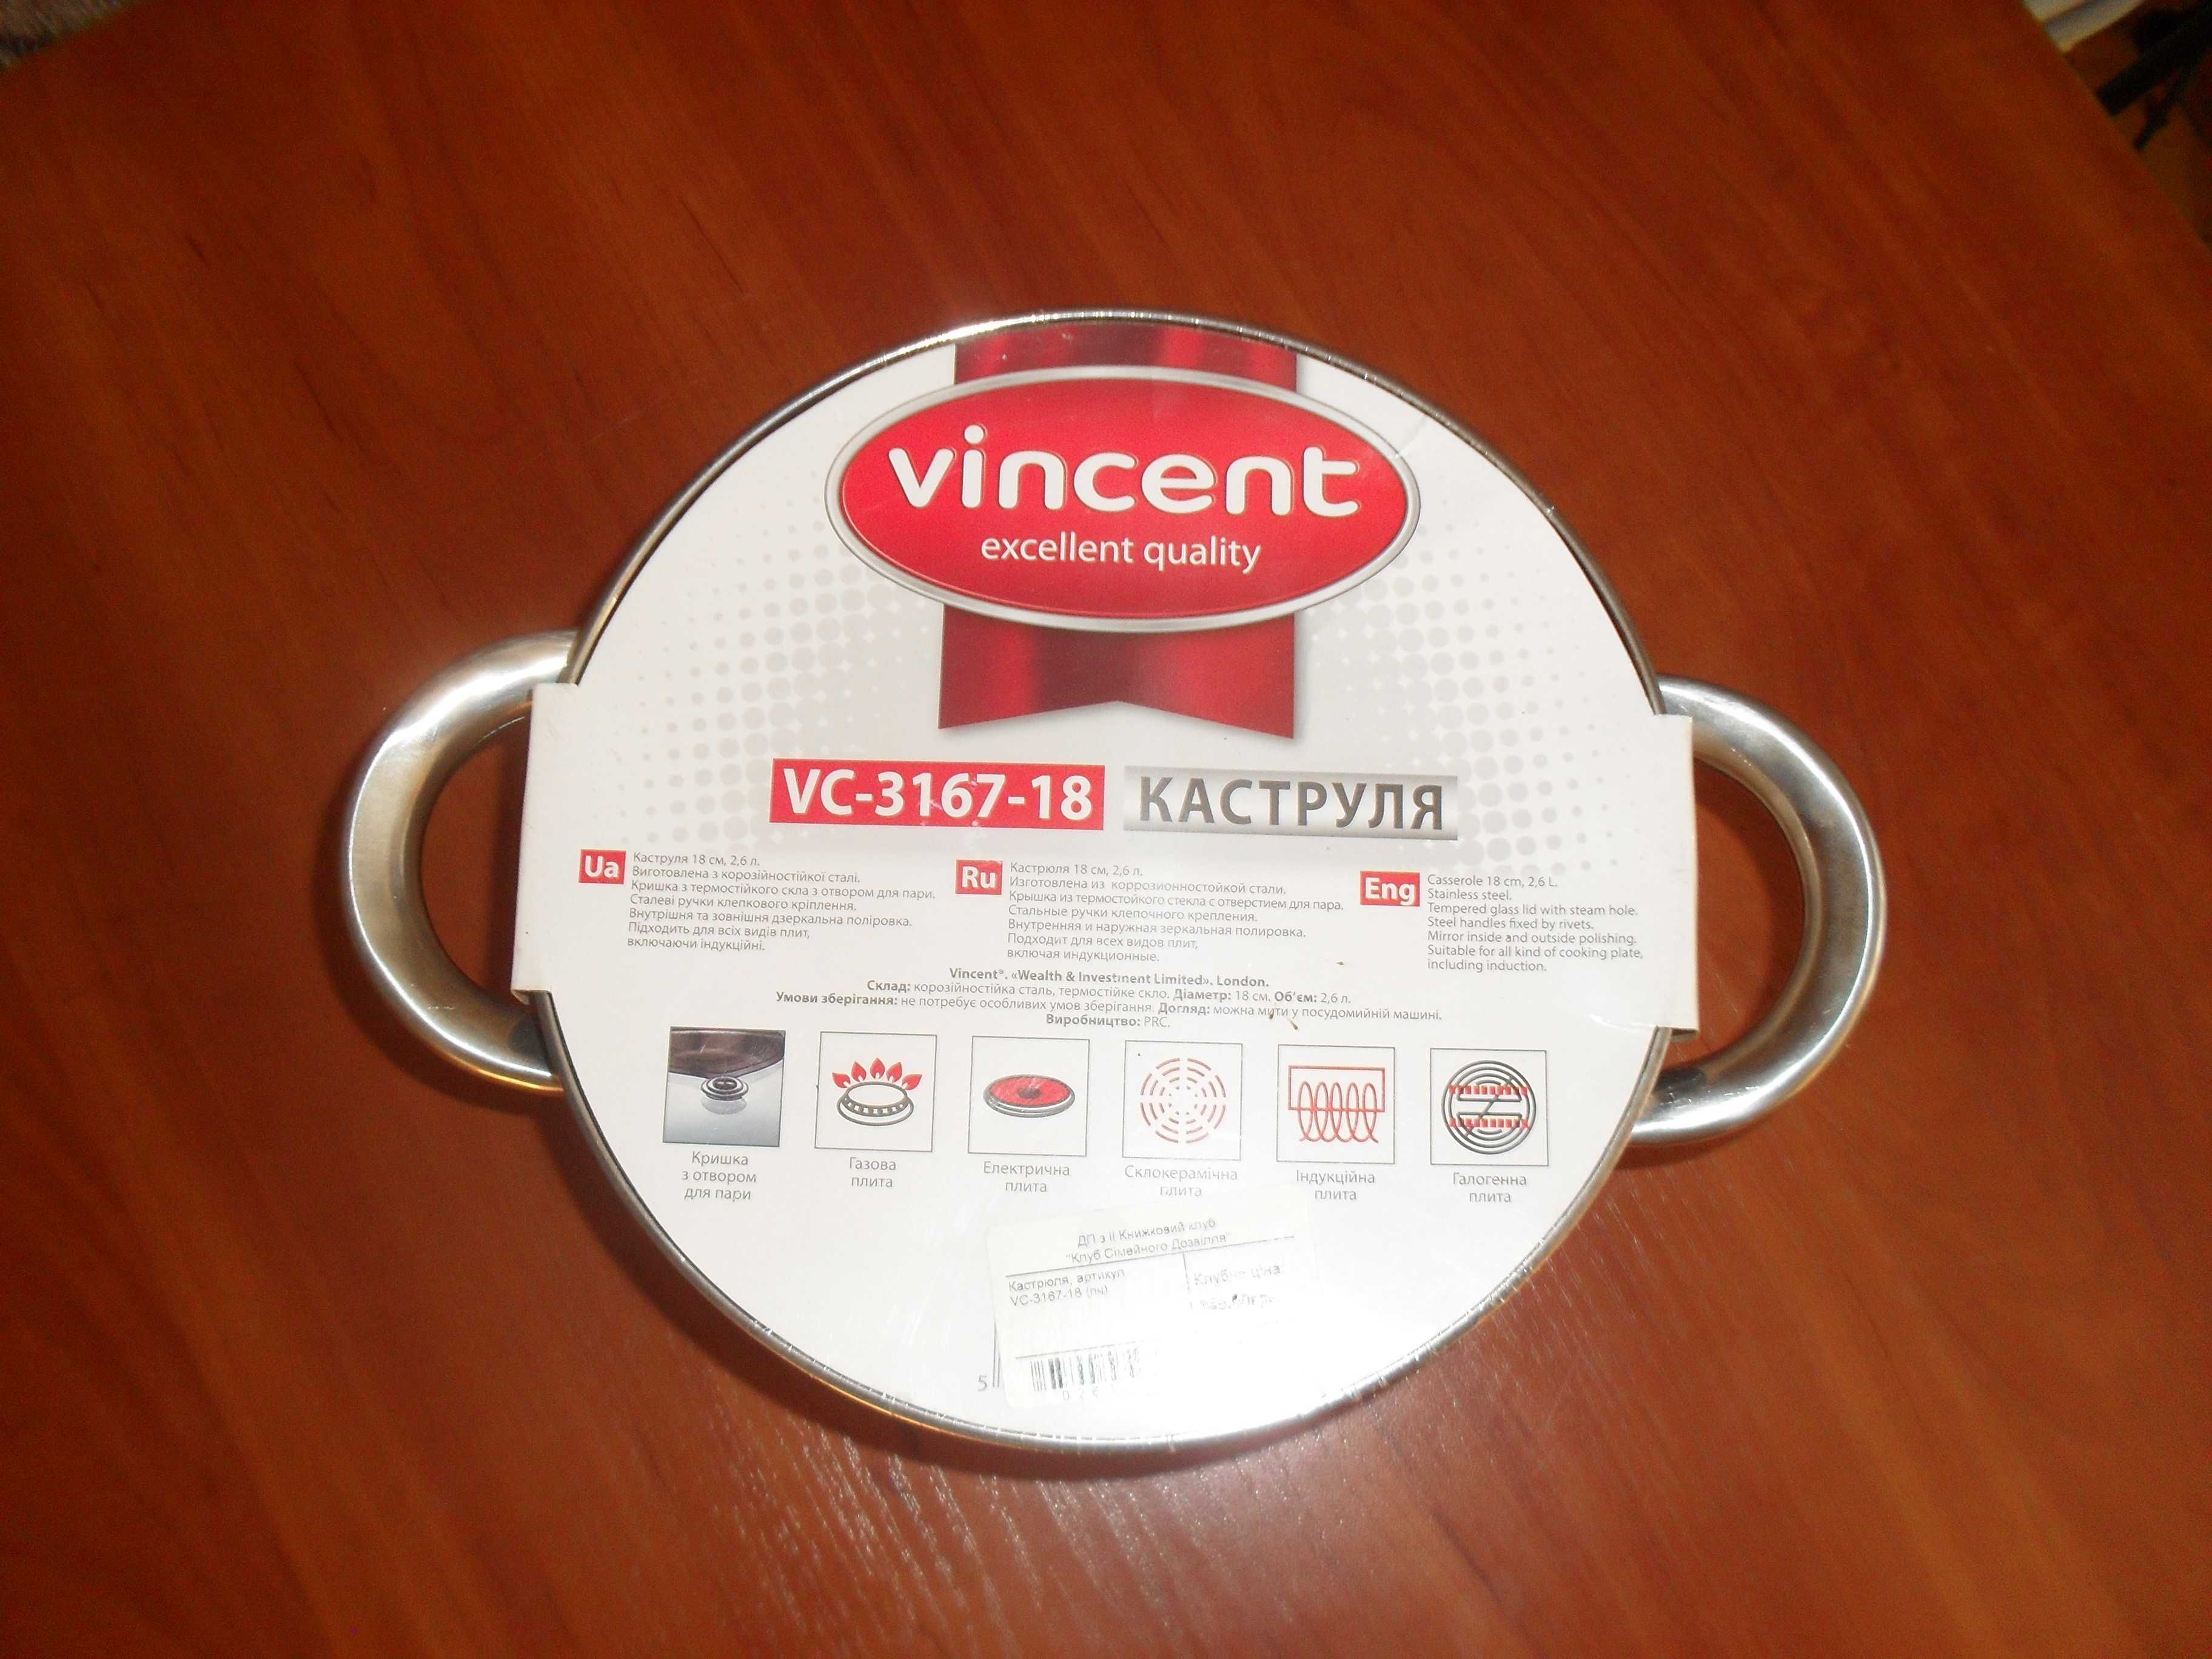 Кастрюля "Vincent" 2,6 л (VC-3167-18).